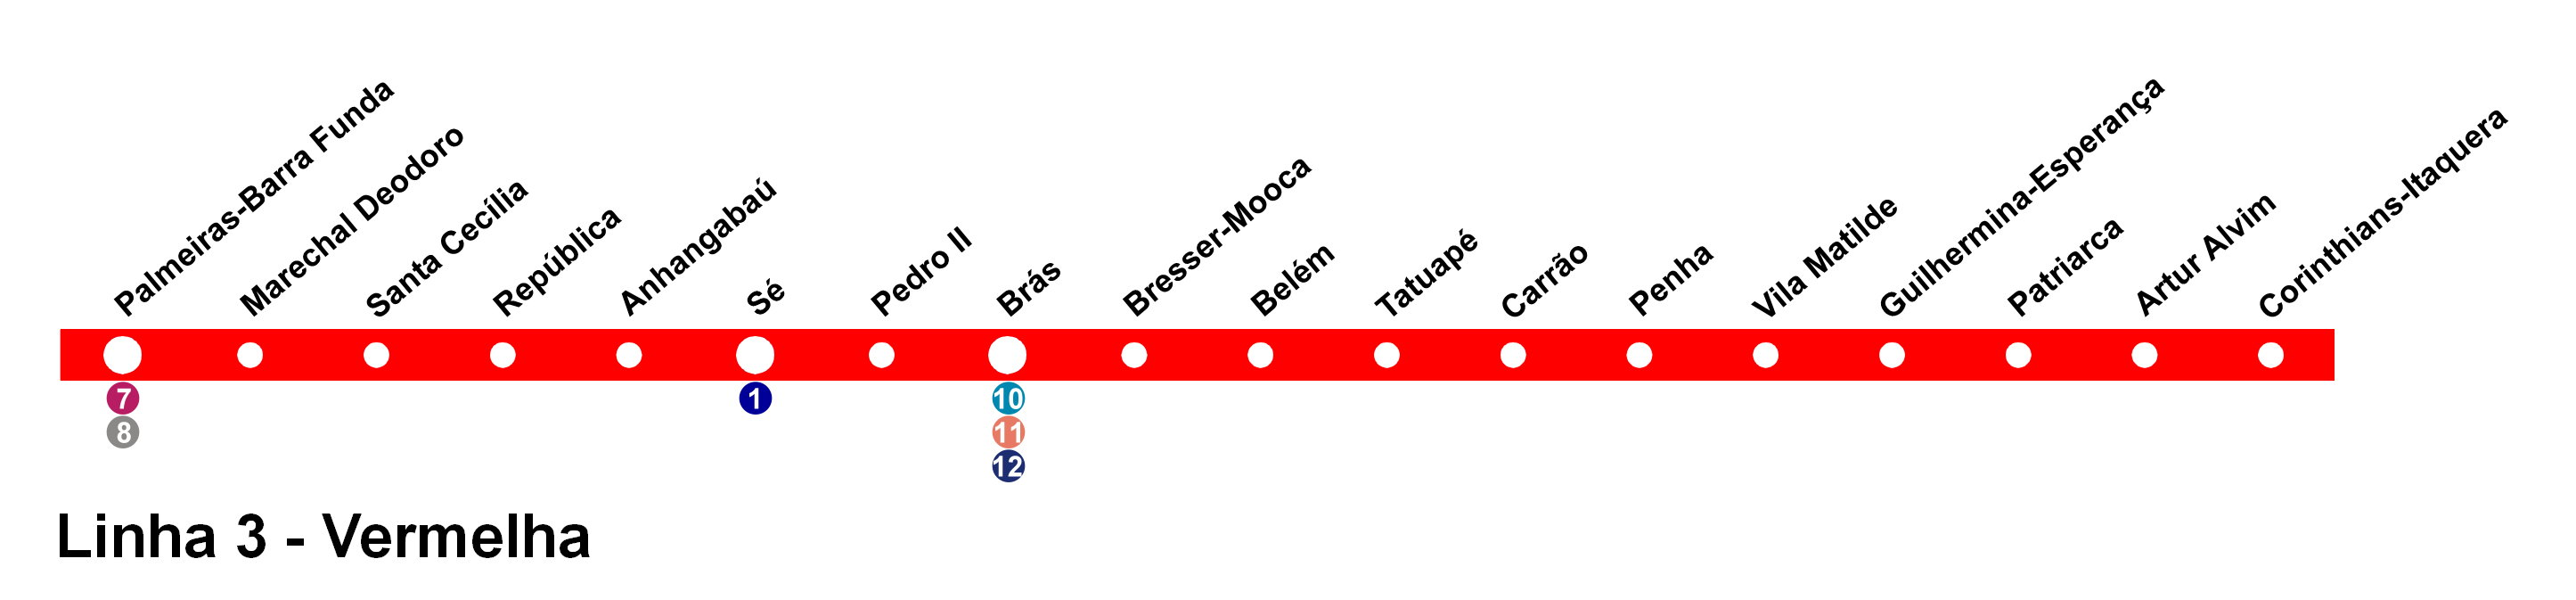 Quais são as estações da Linha Vermelha?